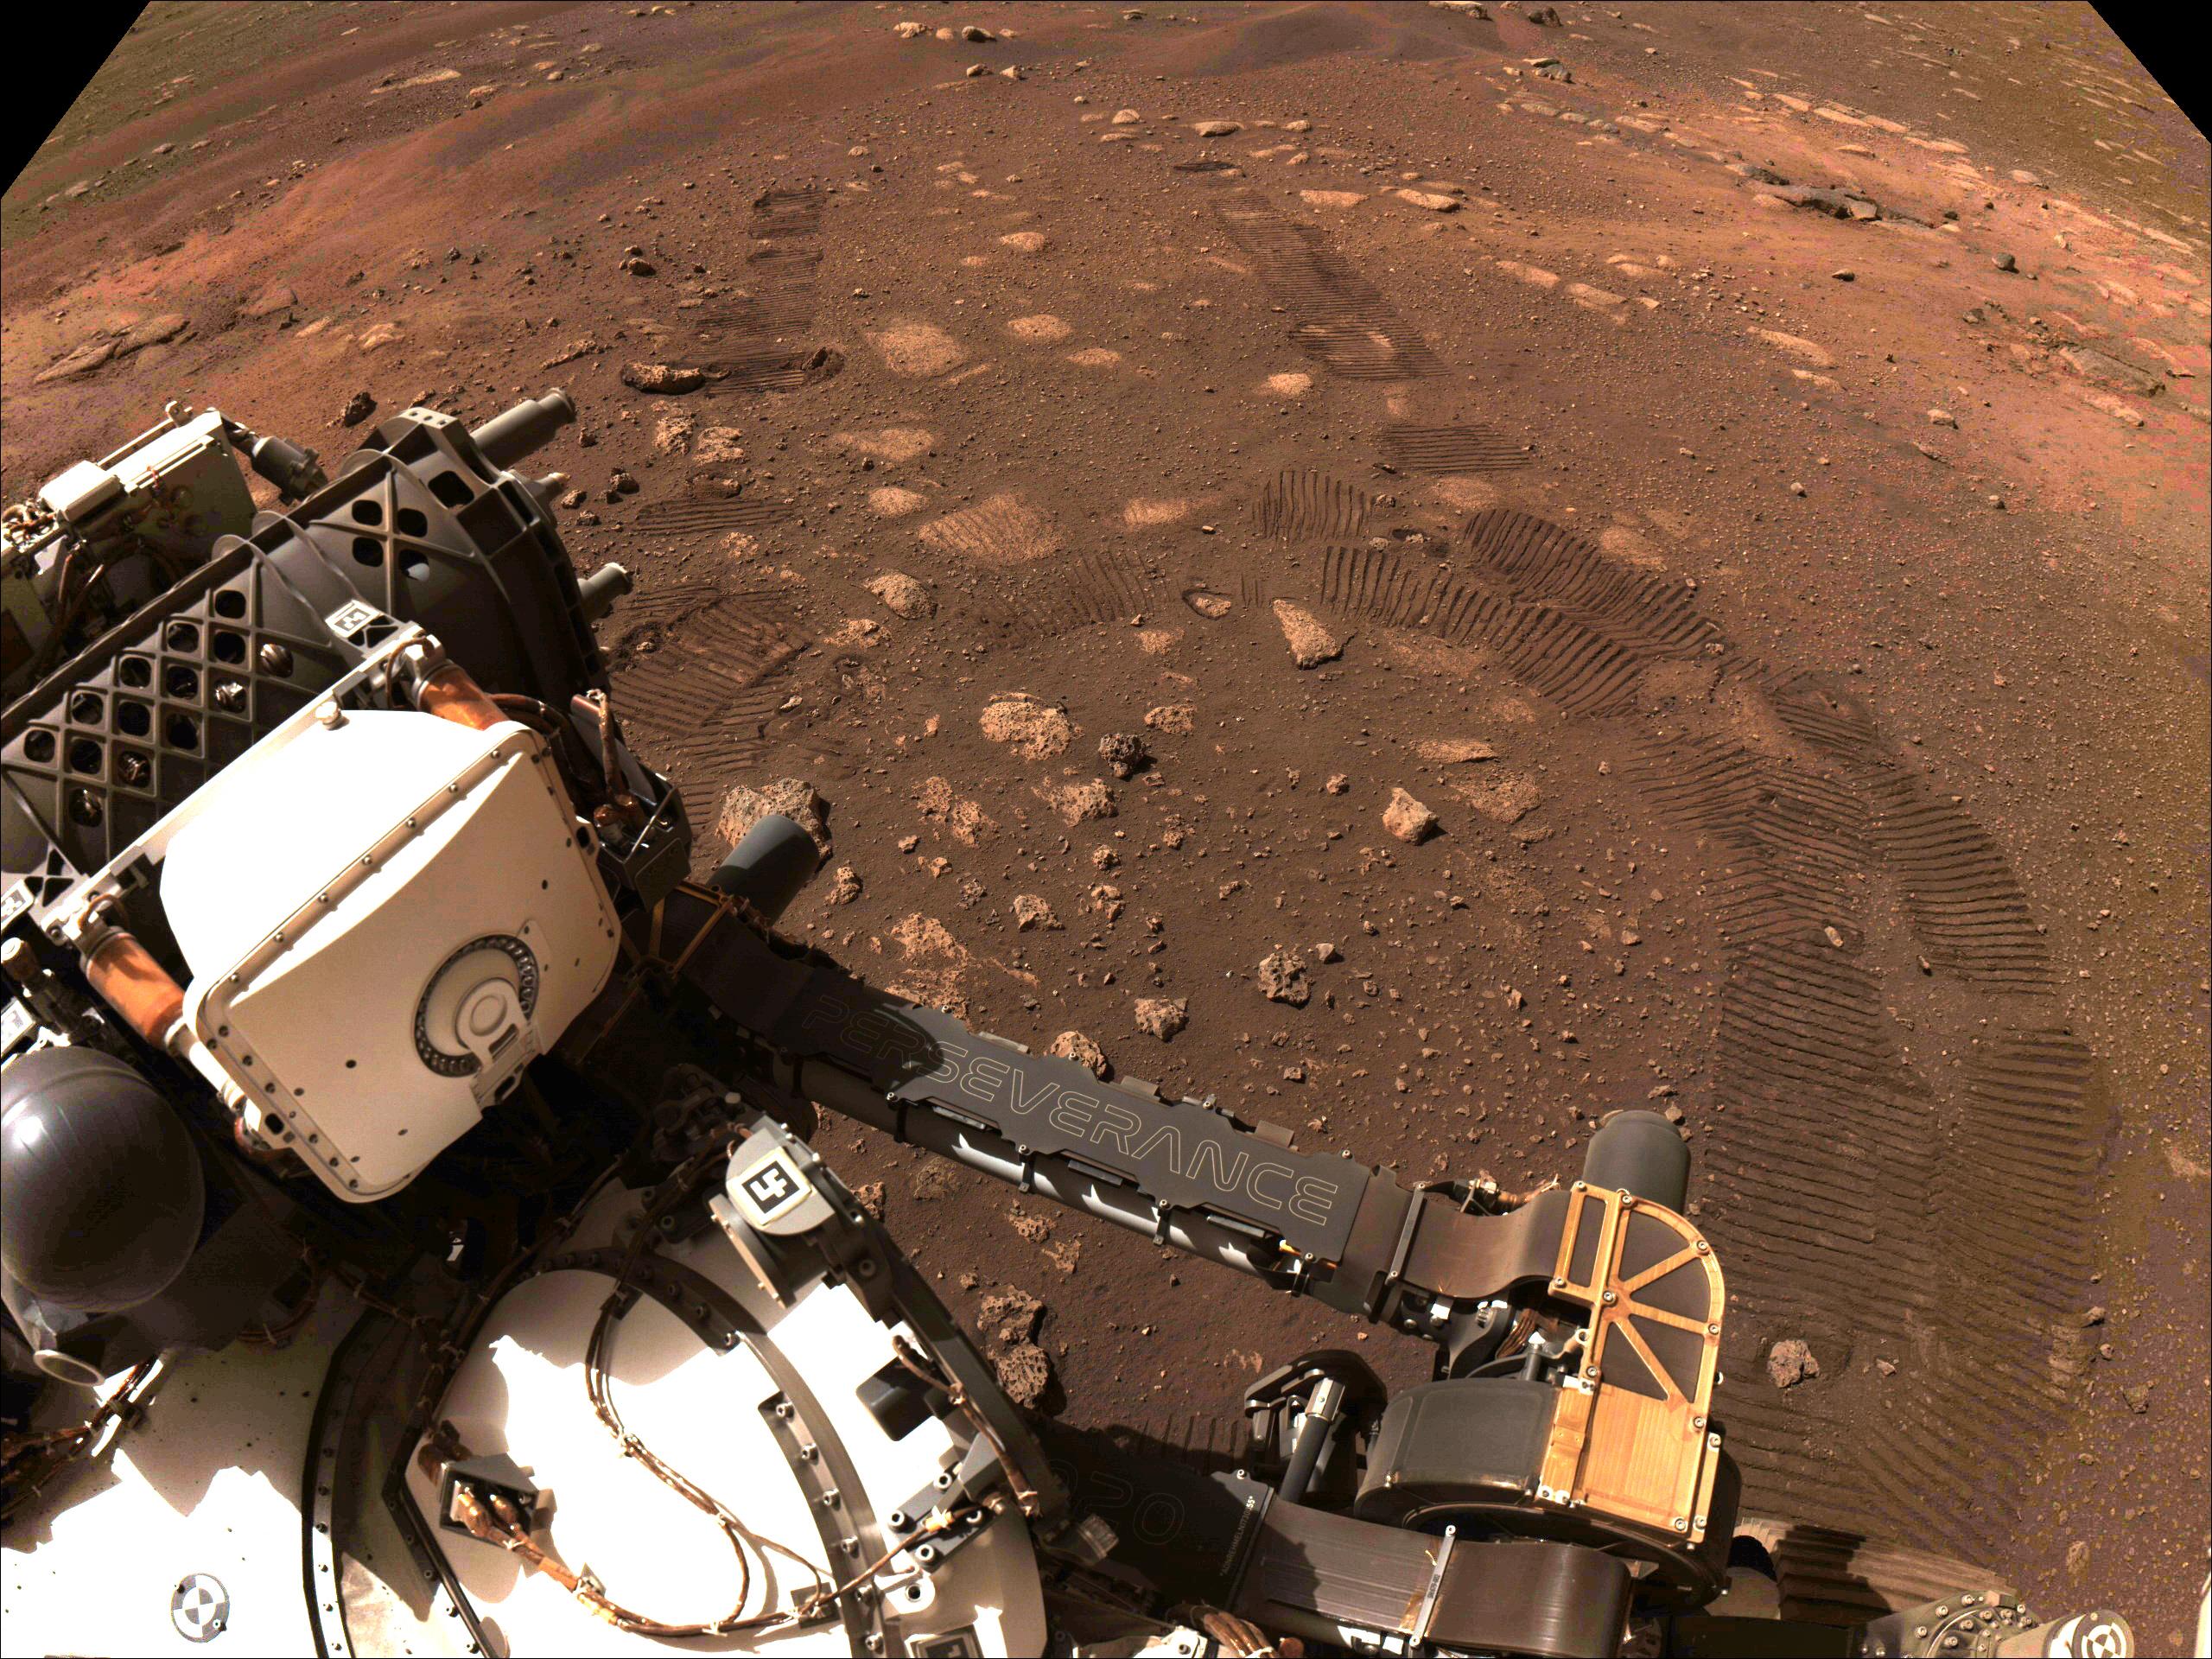 صورة يظهر في أسفلها جزء من عربة المُثابرة ومن خلفها سطح المريخ الذي تظهر على تربته آثار عجلاتها كخطين وقوس.